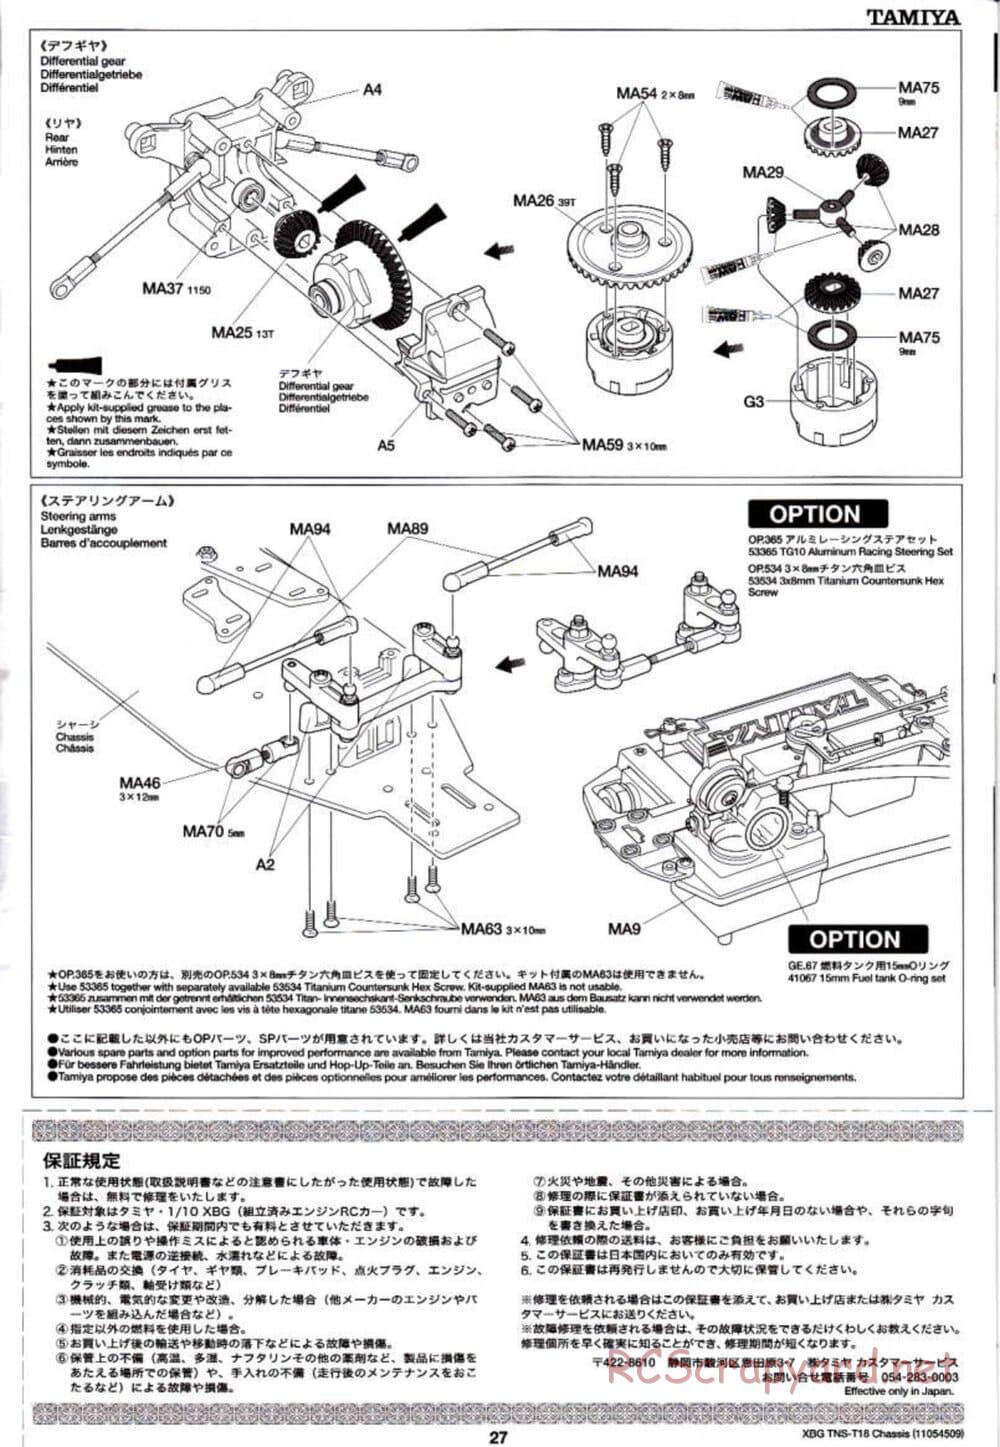 Tamiya - TNS-T18 Chassis - Manual - Page 27